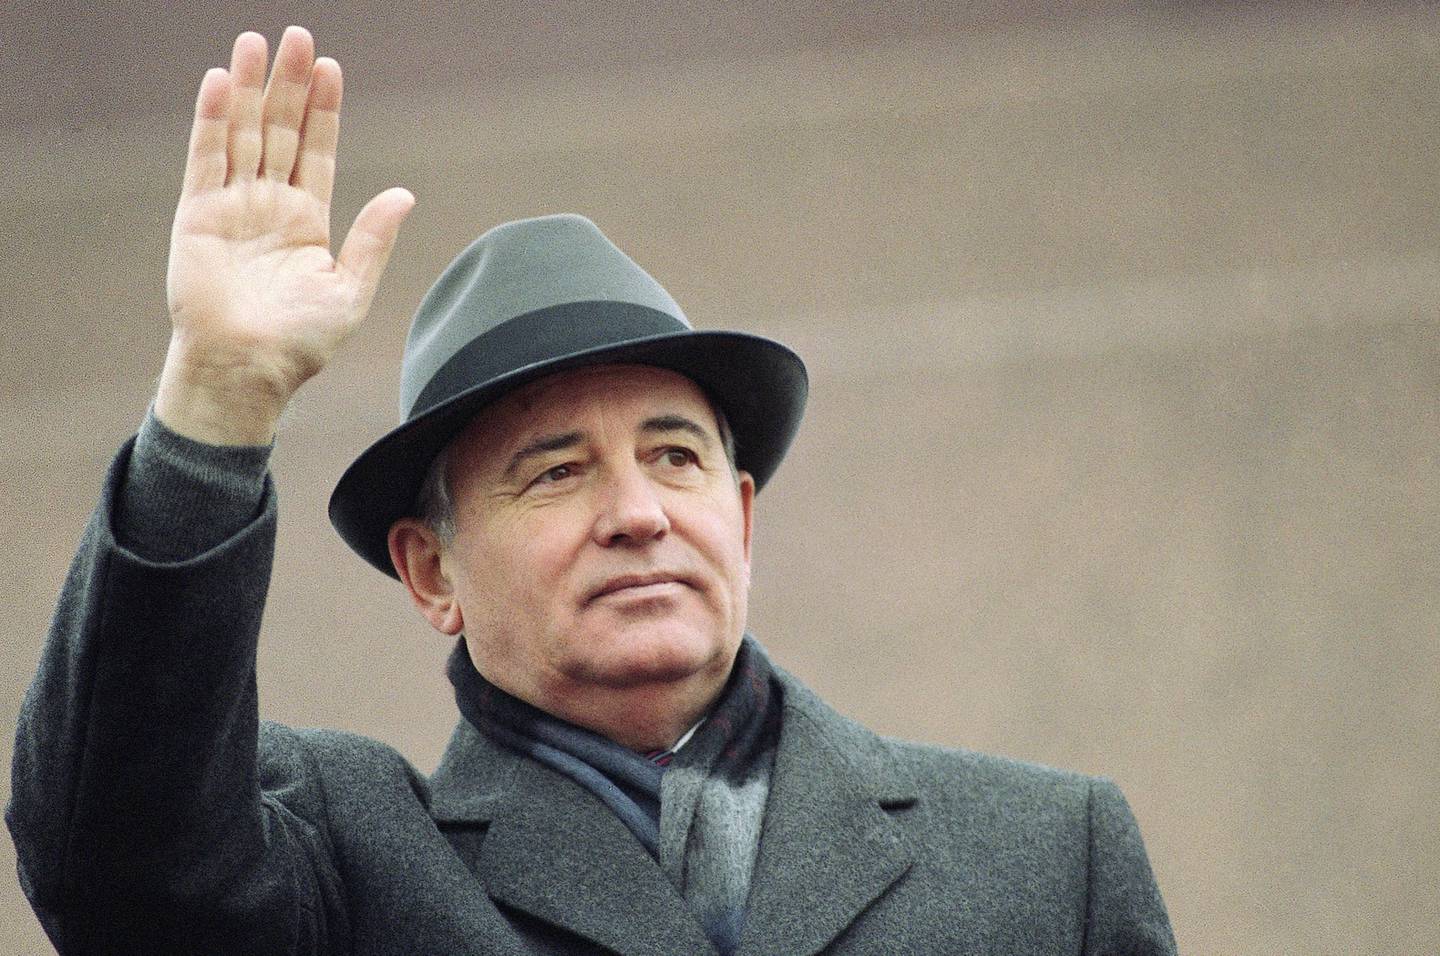 Sovjetunionens siste president Mikhail Gorbatsjov vinker fra tribunen på Den røde plass 7. november 1989. Tirsdag melder russiske nyhetsbyråer at Gorbatsjov er død, 91 år gammel. Foto: Boris Yurchenko / AP / NTB